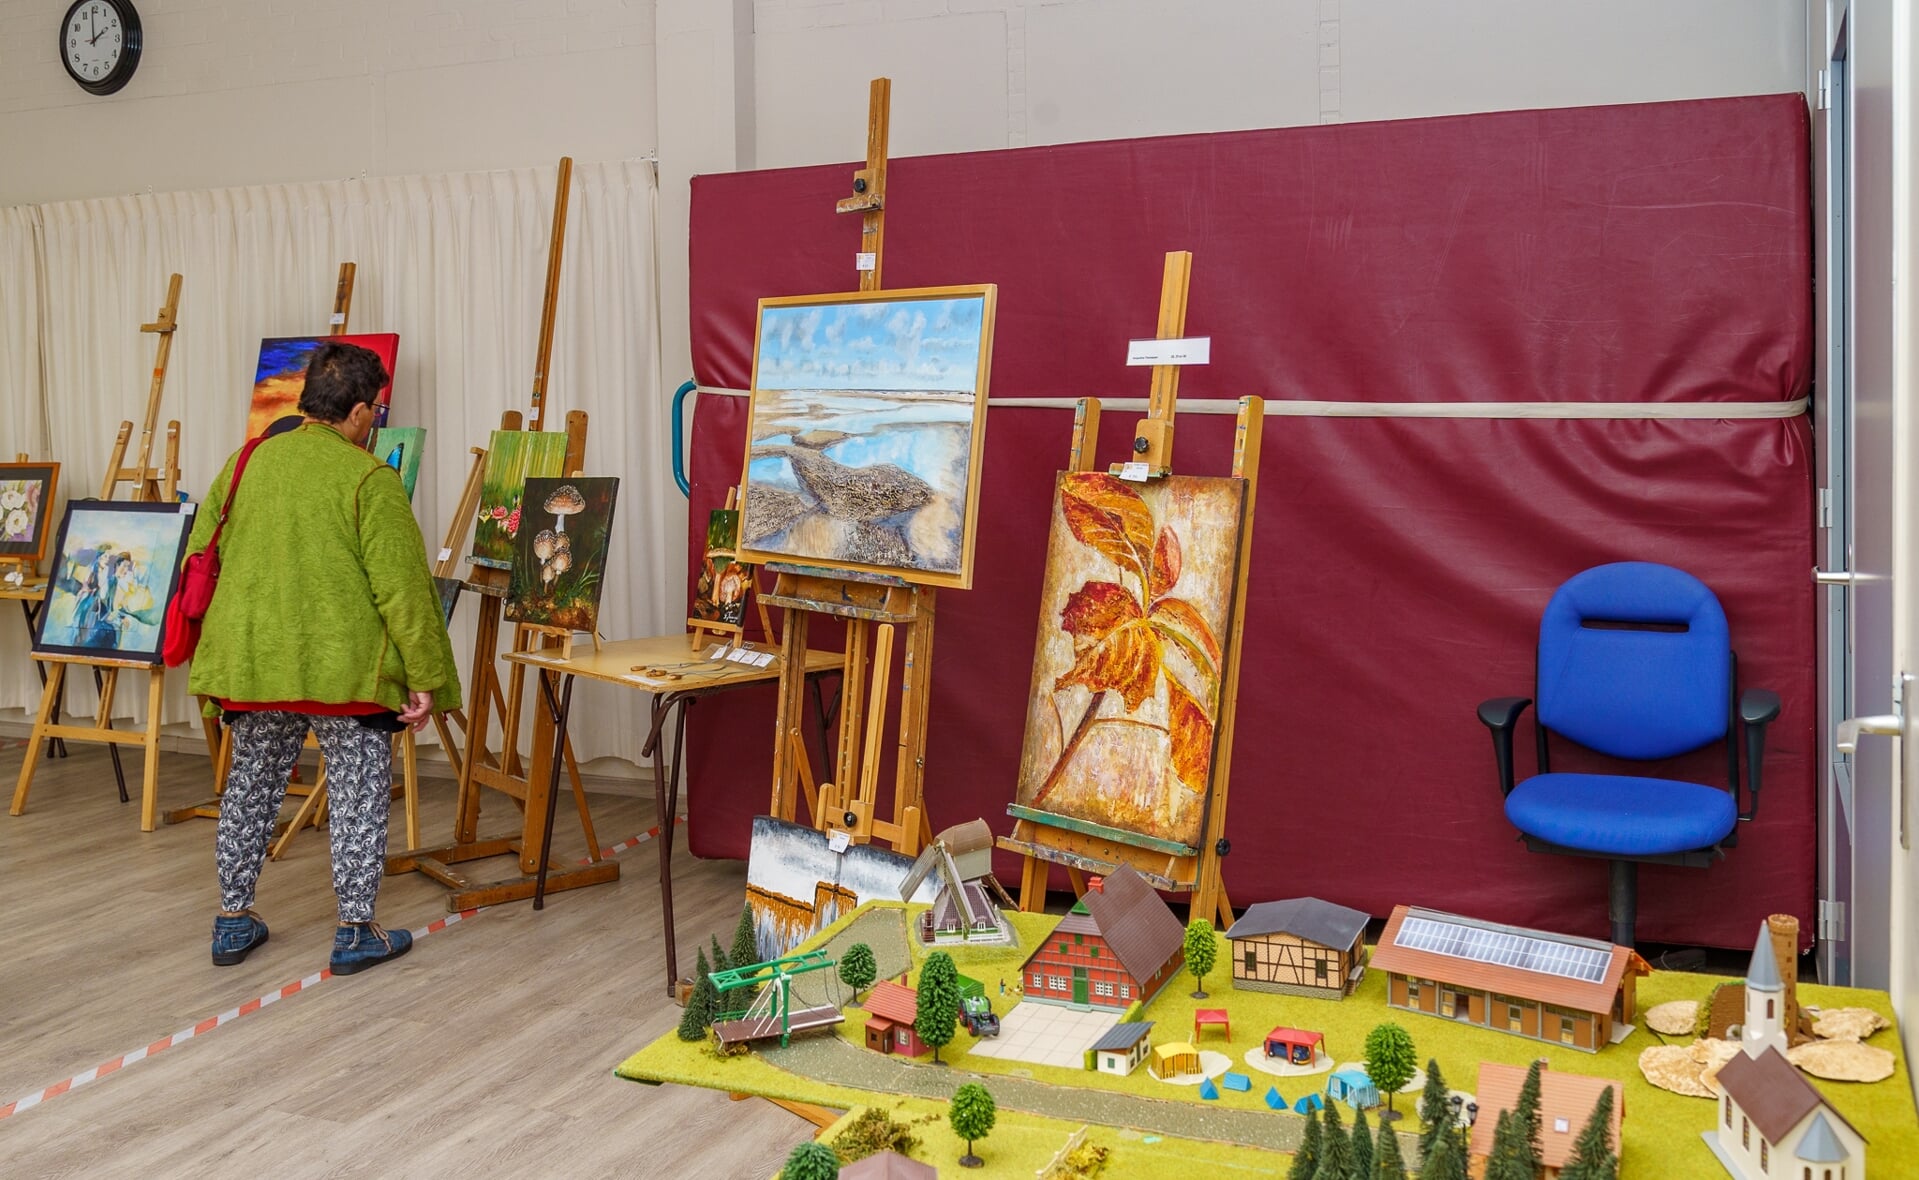 Hobbycentrum Boxtel biedt door het jaar heen tal van cursussen, onder andere schilderlessen. Vorig jaar werd een aantal doeken geveild. In de zomer is er een scala aan extra activiteiten.